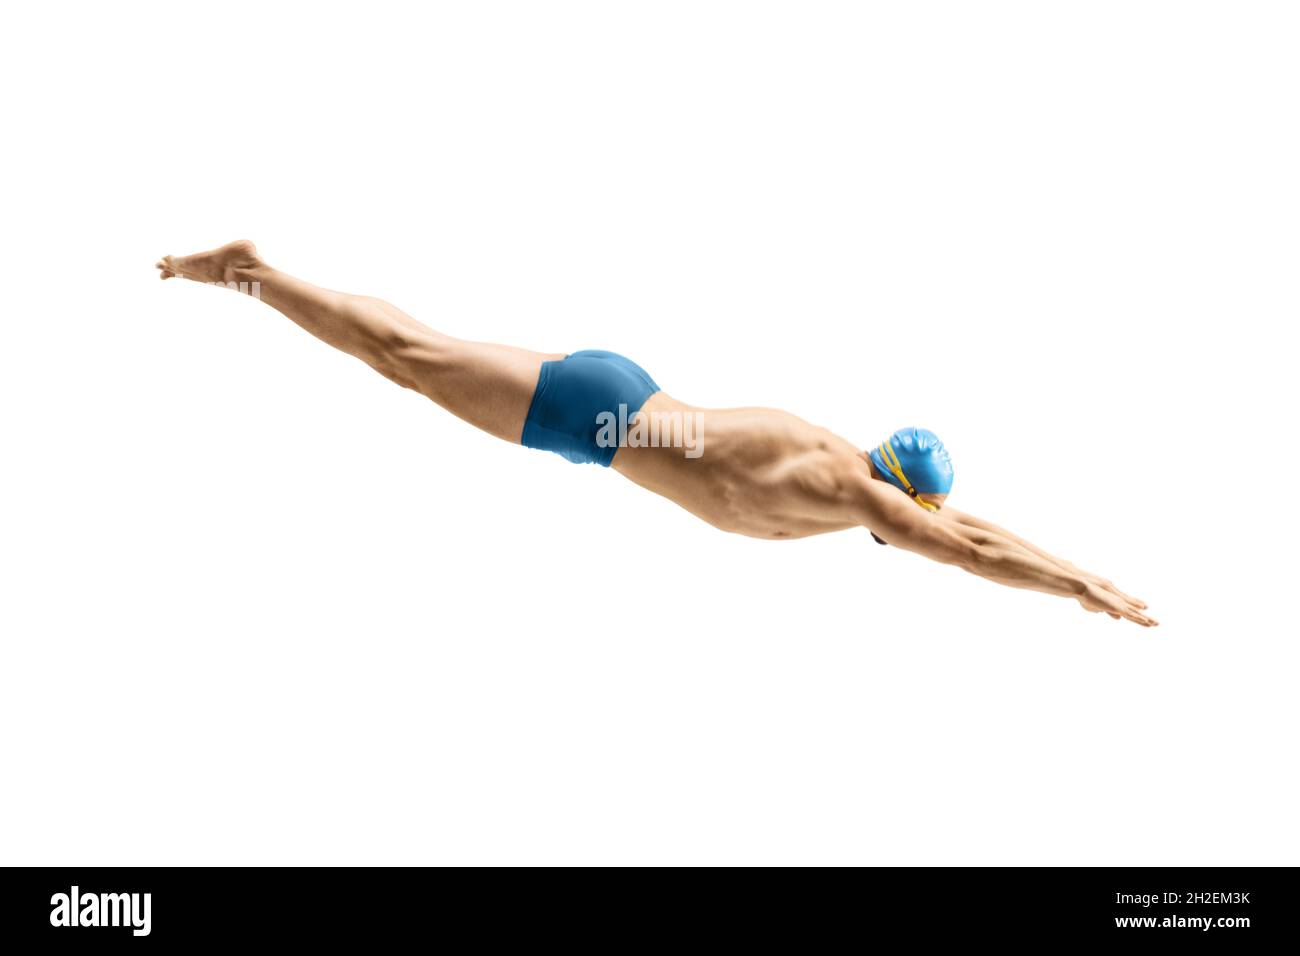 Nuotatore maschile con costume da bagno e cappello che salta in acqua isolata su sfondo bianco Foto Stock